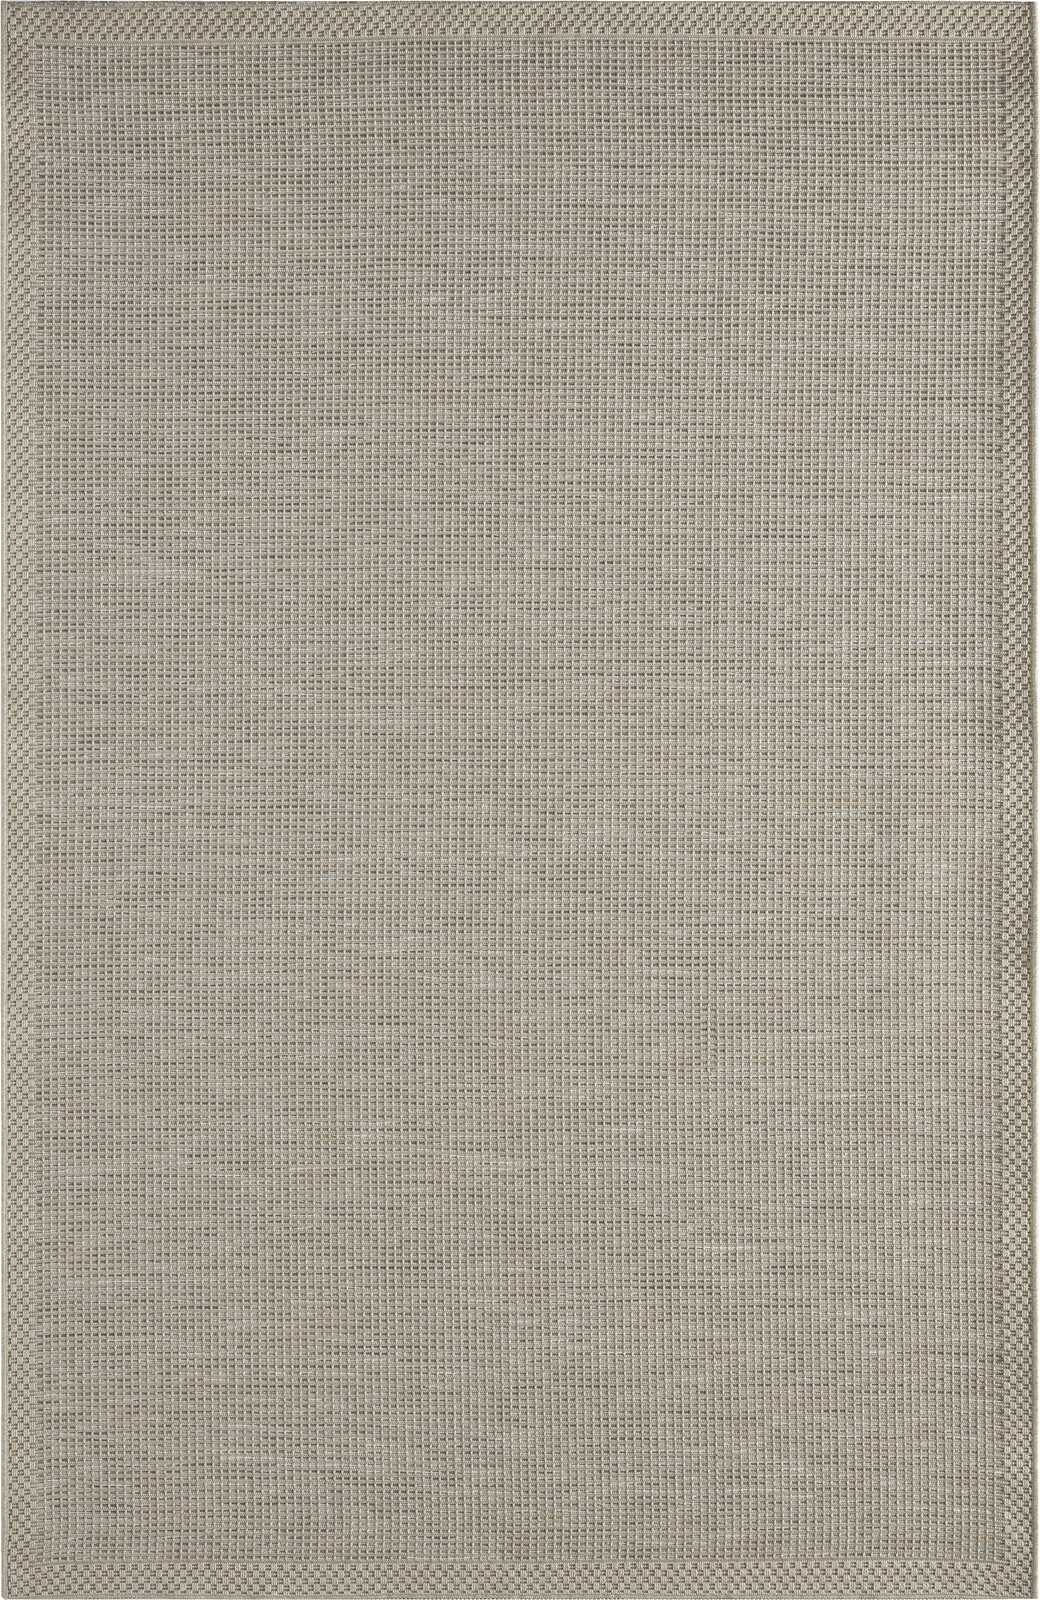             Tappeto per esterni a trama piatta in grigio - 220 x 160 cm
        